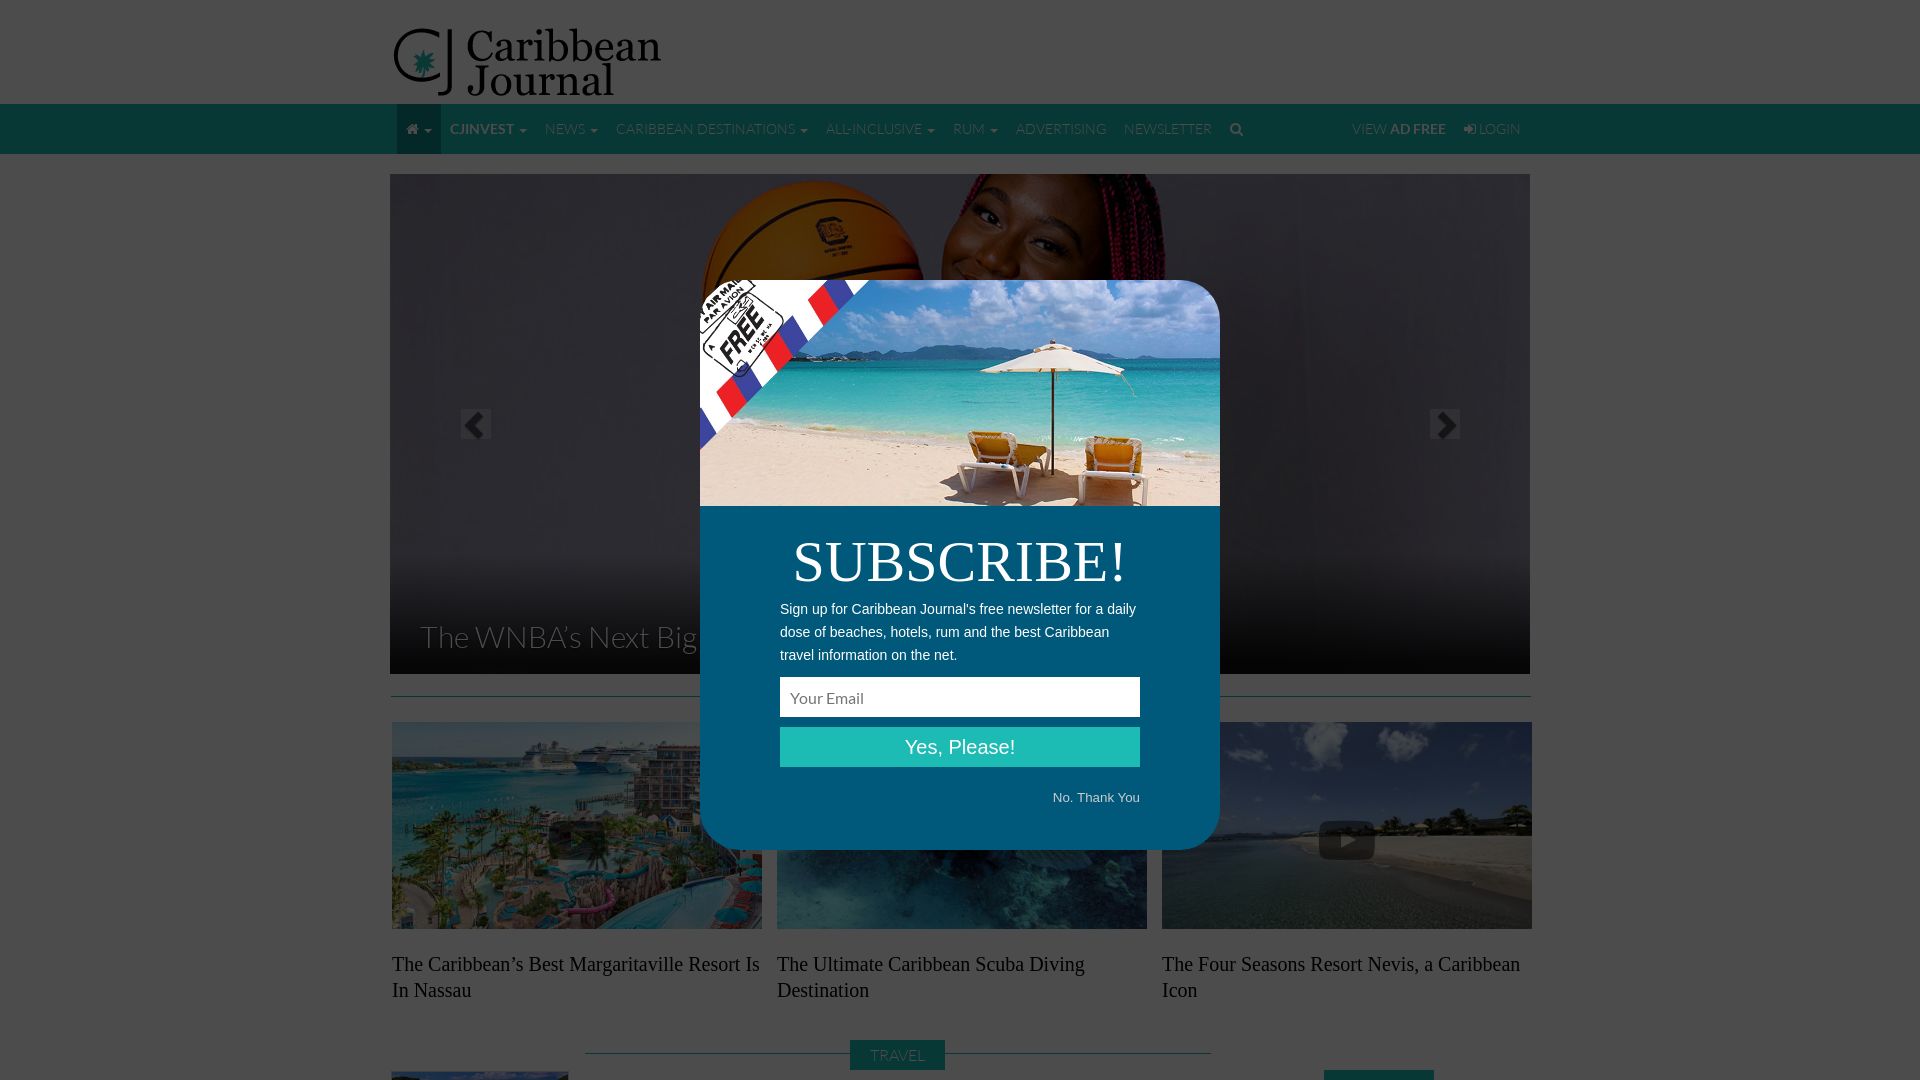 Website status caribjournal.com is   ONLINE